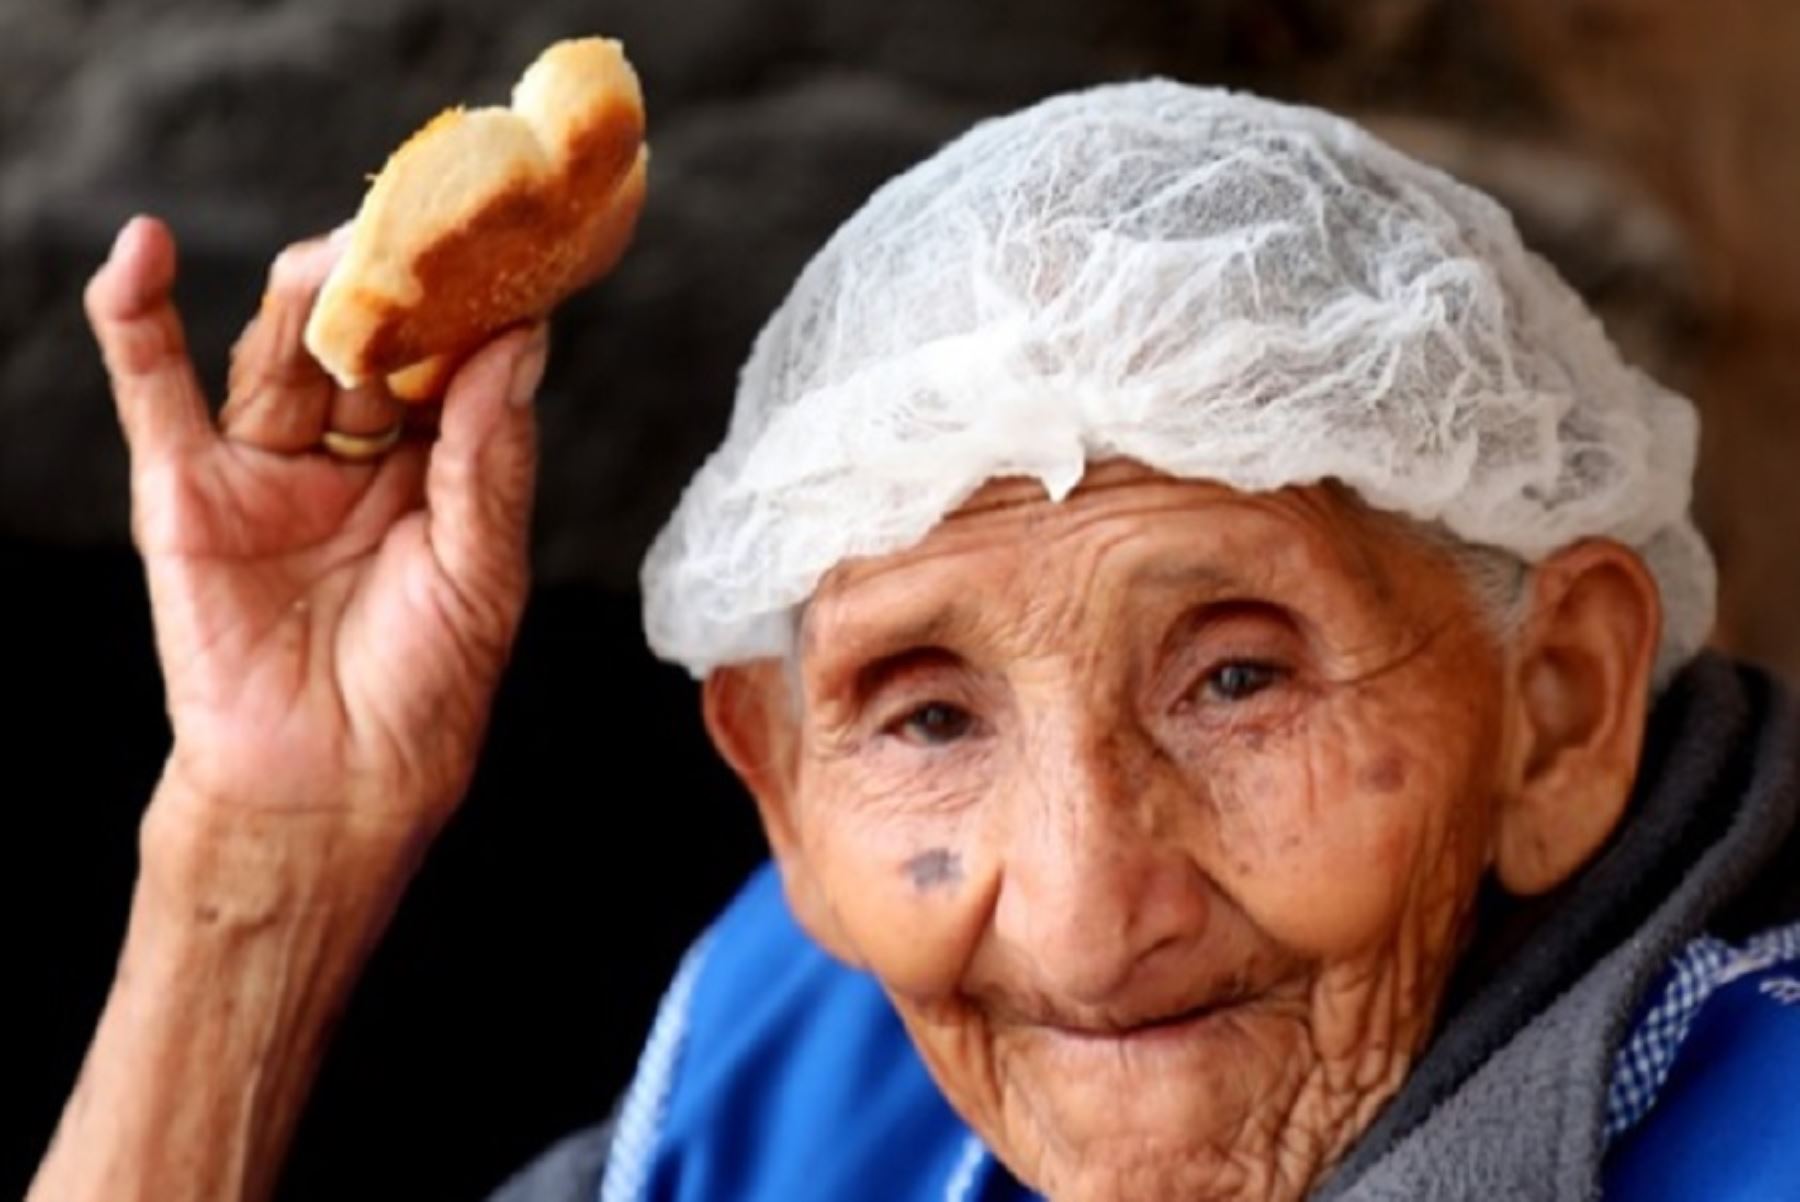 Para Reyna Cuadros Valer, usuaria de Pensión 65 en el distrito de Cotahuasi, Arequipa, hacer pan en más que un trabajo, es su vida, es la forma como creció y con la que sabe transmitir cariño y atención a su familia, sus vecinos, amigos y clientes.